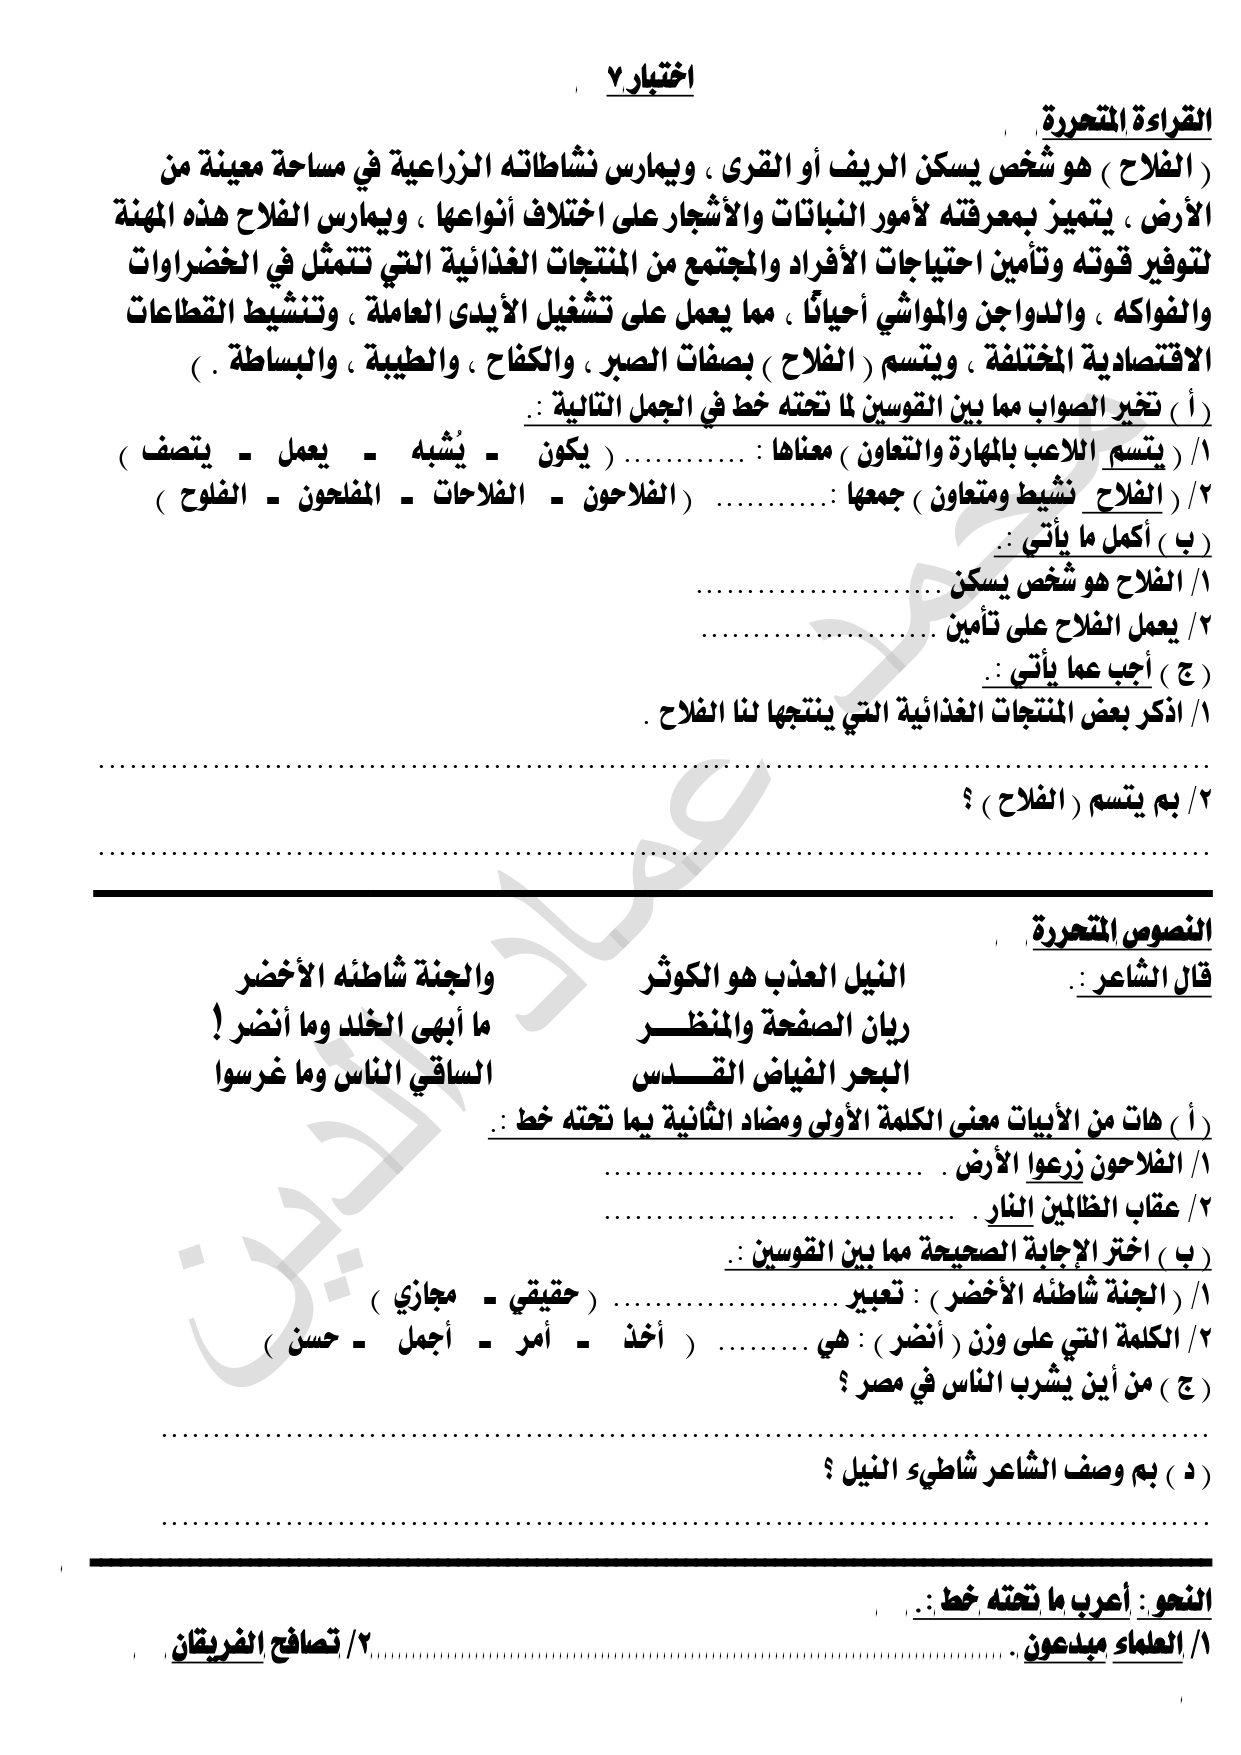 الاختبار السابع  المتحرر في اللغة العربية للصف الرابع الابتدائي ترم ثاني 2022